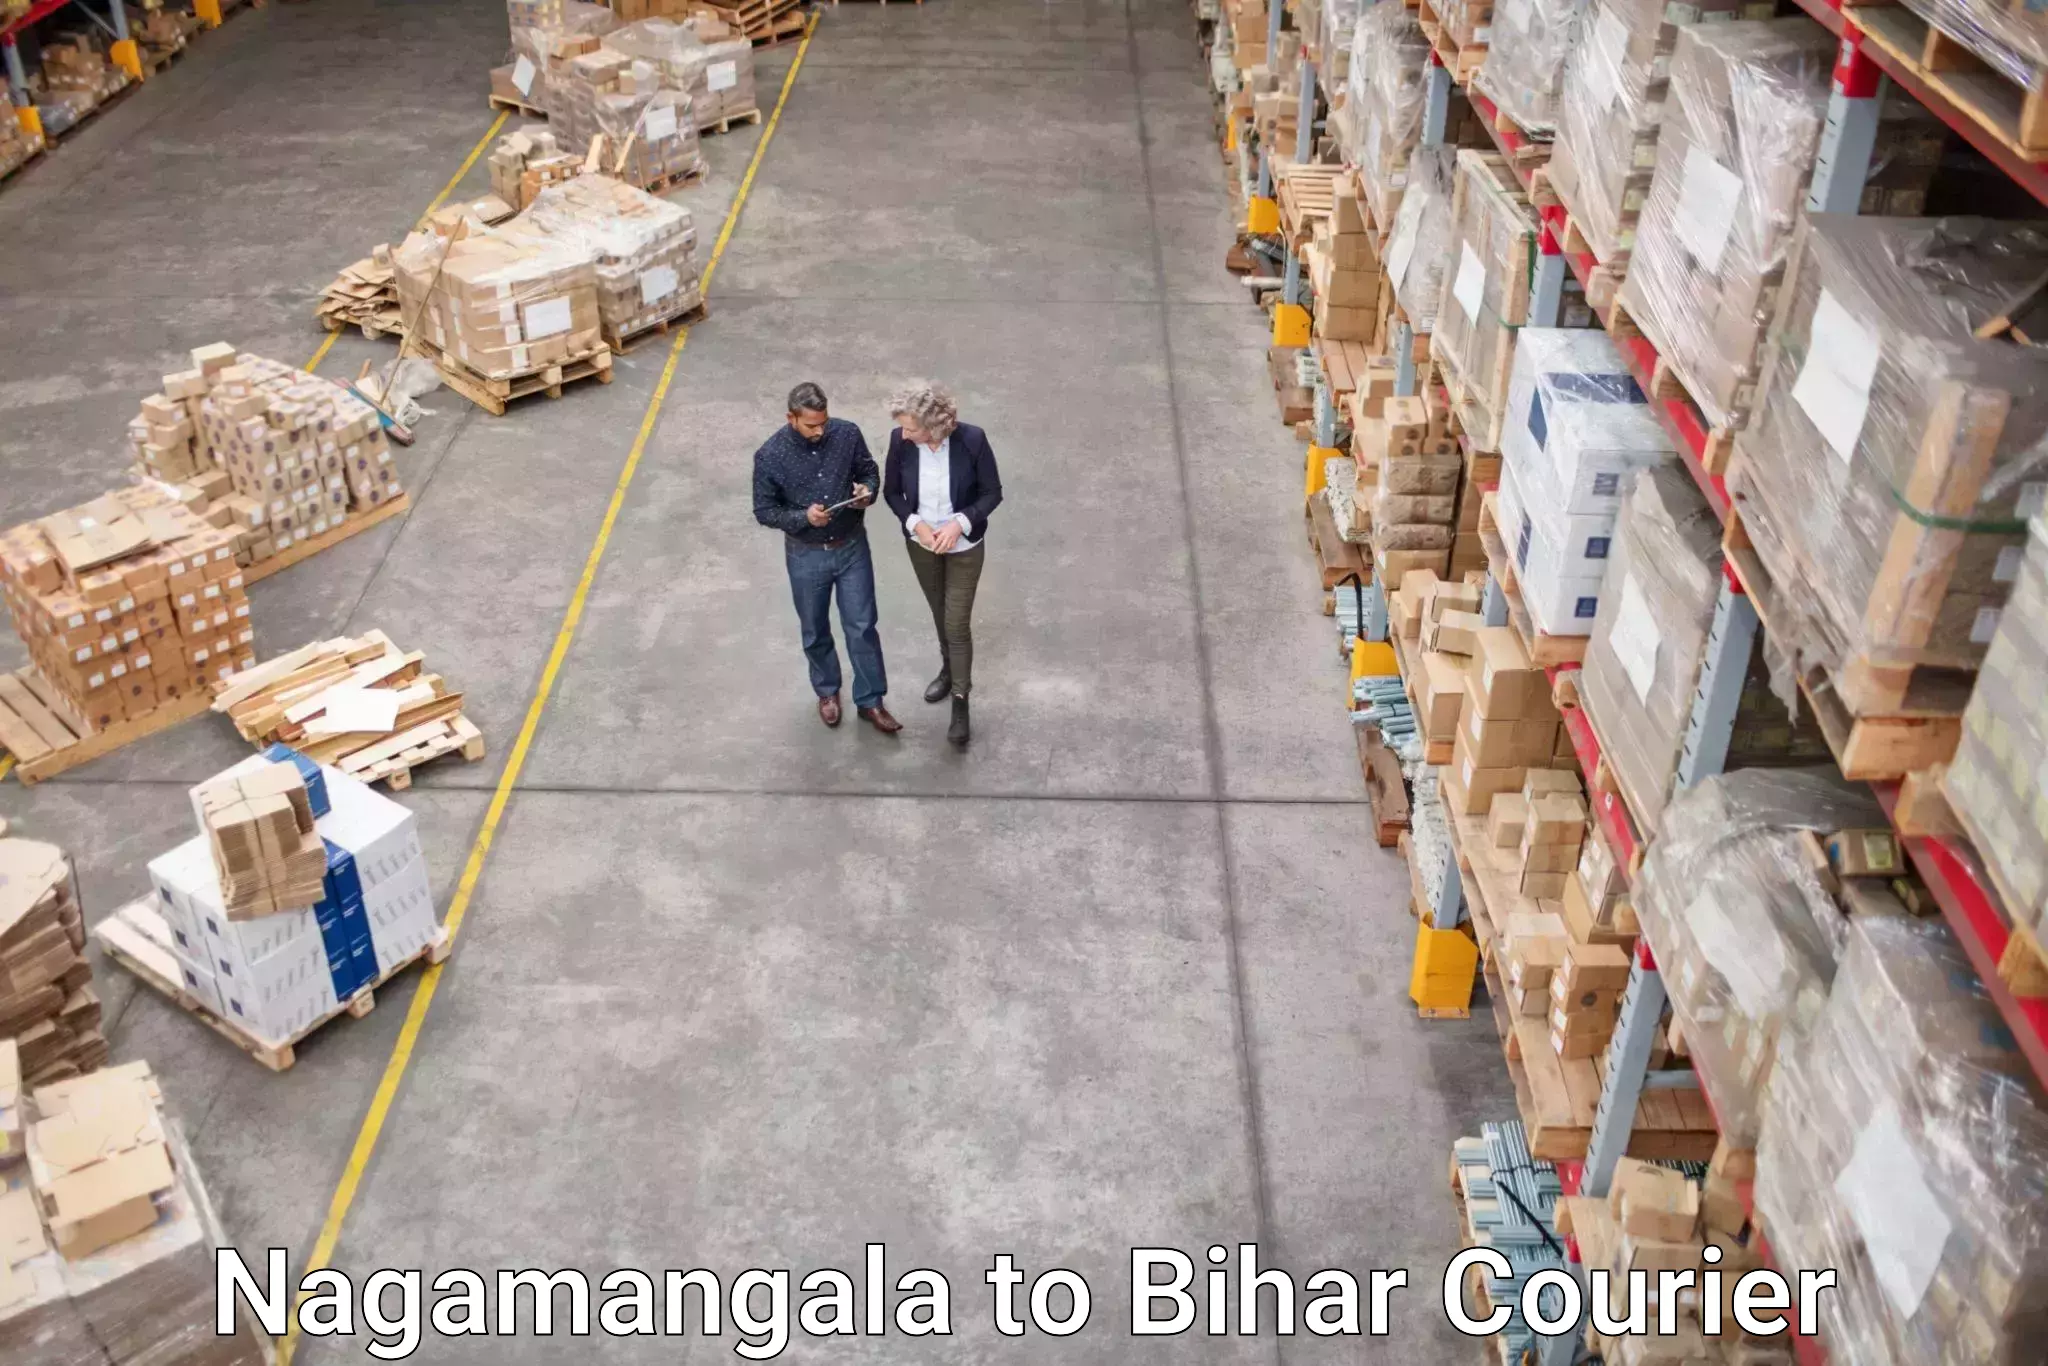 Urgent courier needs Nagamangala to Buxar